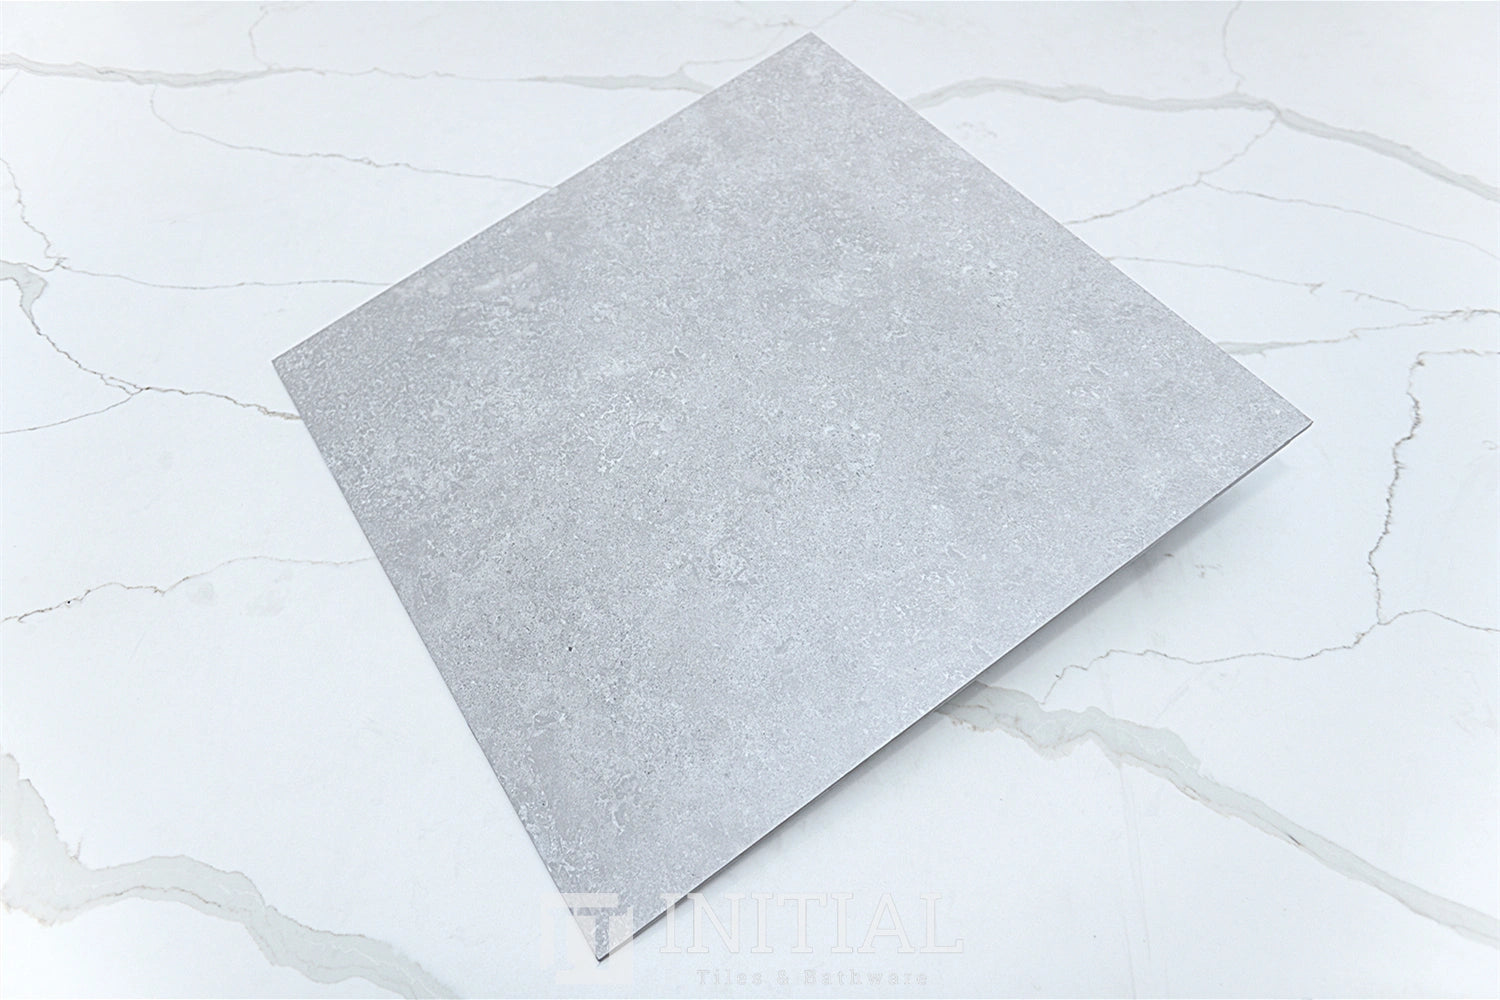 Concrete Look Tile Coeval Terra Matt 600X600 ,